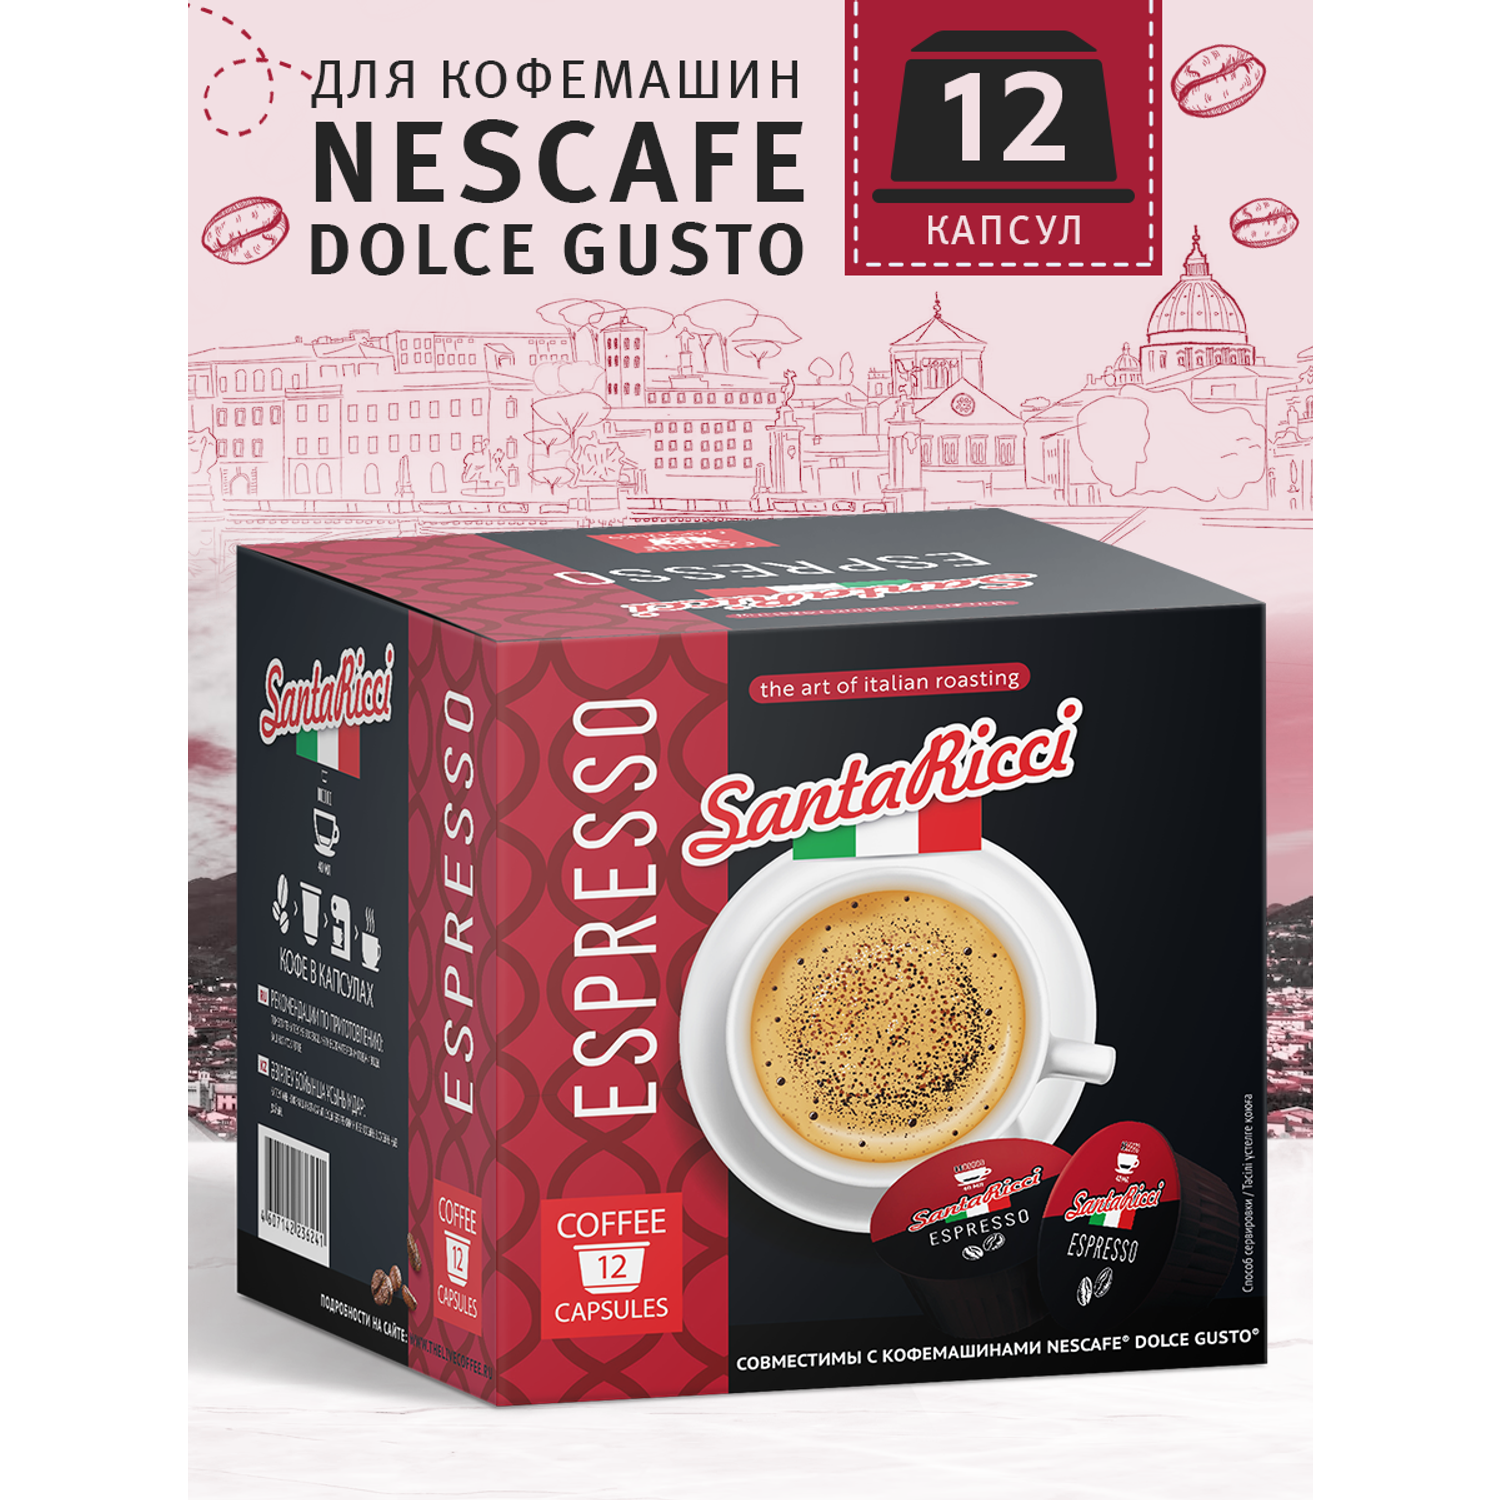 Кофе молотый в капсулах Santa Ricci капсулы dolce gusto эспрессо для кофемашины дольче густо молотый 12 шт - фото 1